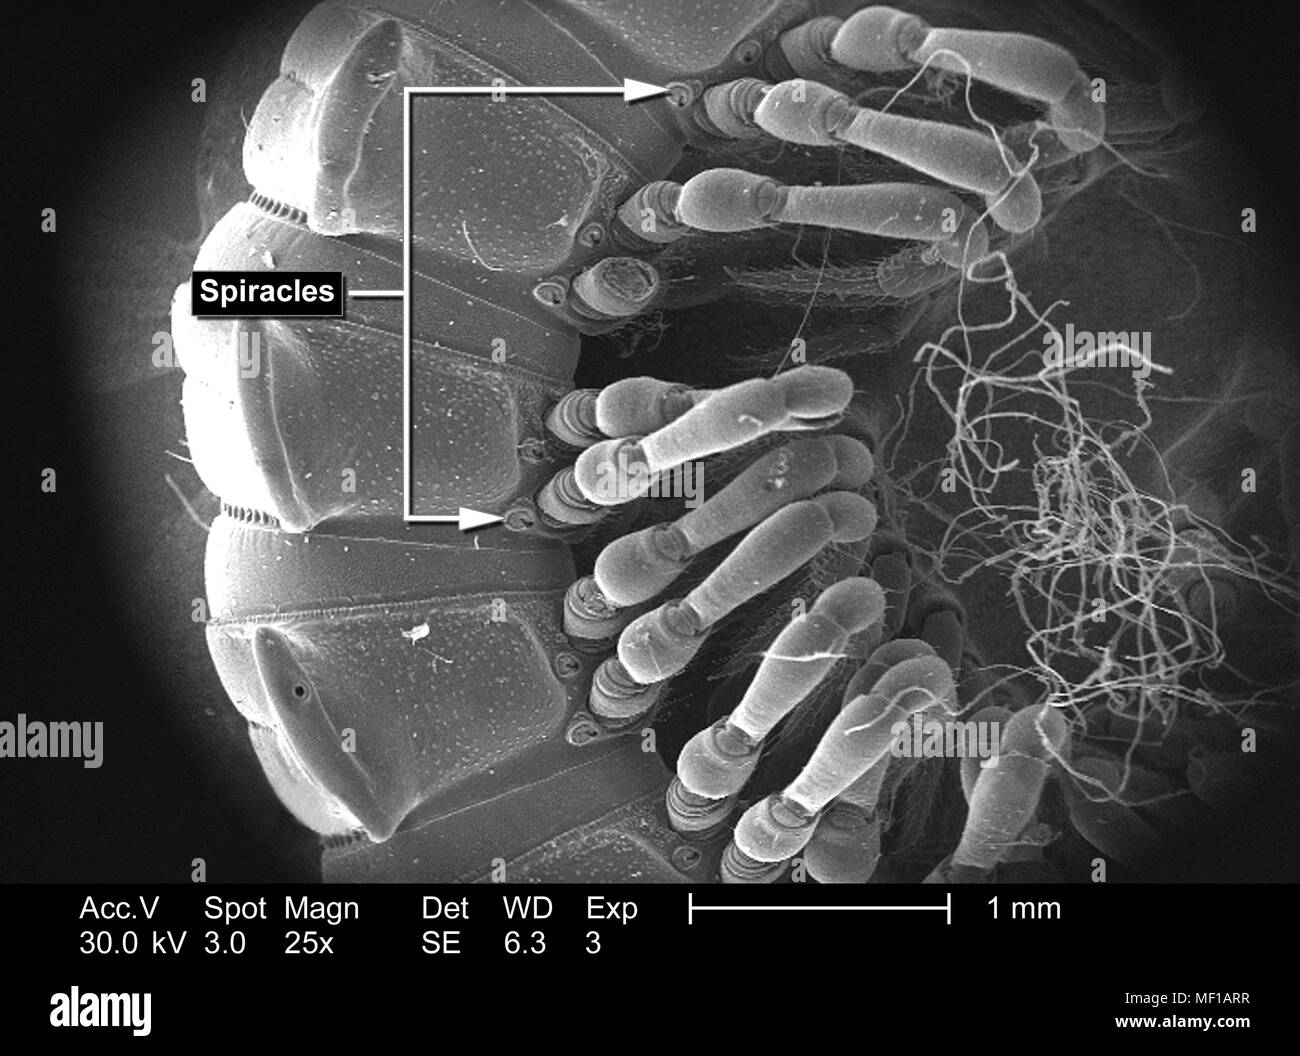 Caratteristiche morfologiche di un millepiedi non identificato il corpo segmentata, raffigurato in 25x di scansione ingrandita al microscopio elettronico (SEM) immagine, 2005. Immagine cortesia di centri per il controllo delle malattie (CDC) / Janice Haney Carr, Oren Mayer. () Foto Stock